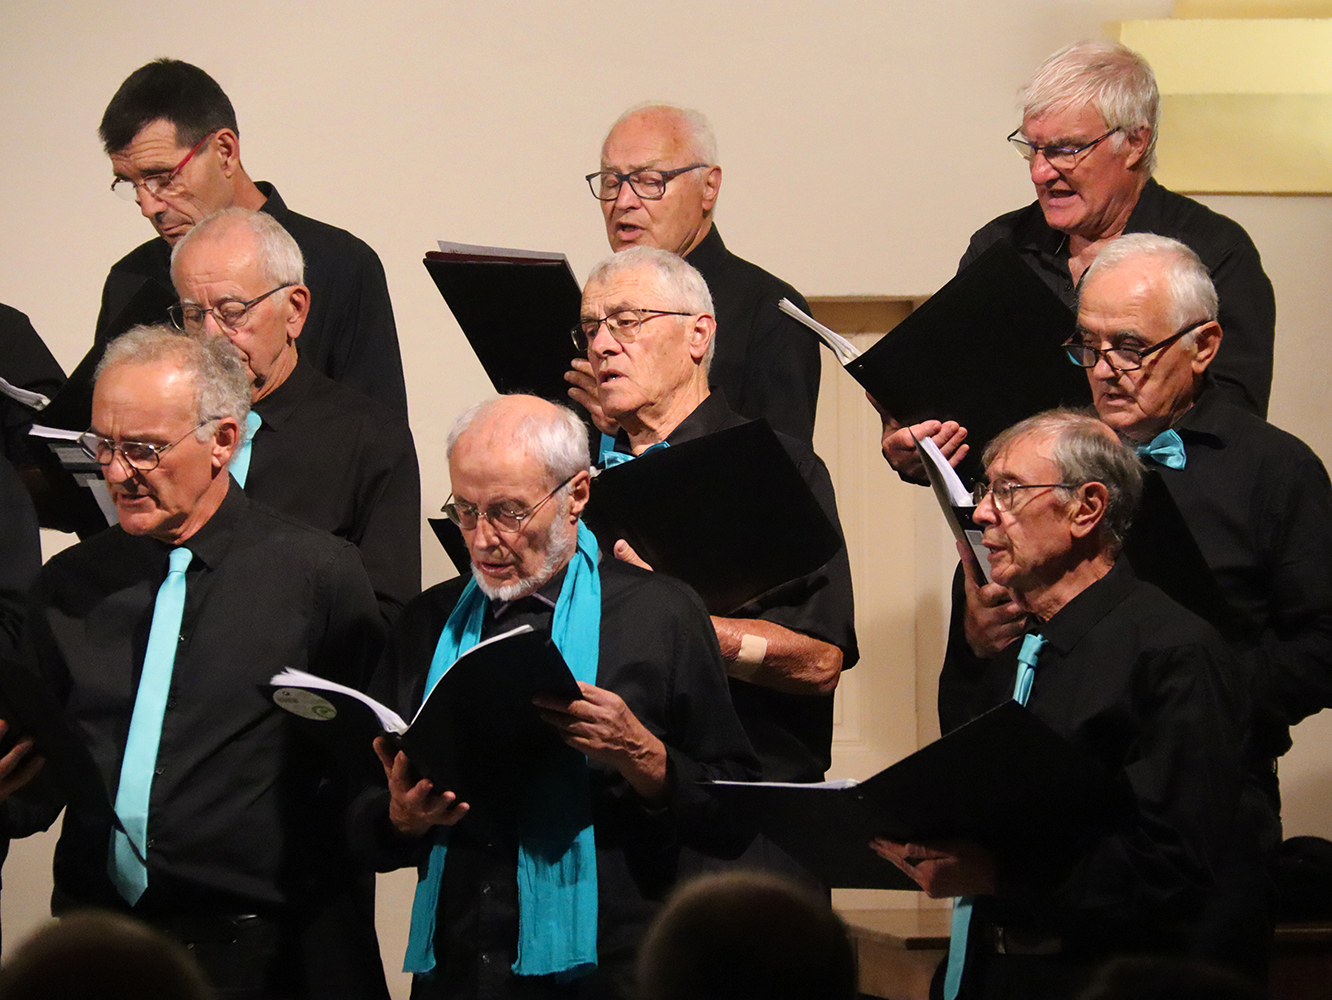 Concert de la chorale de Soyons, "Soyons en choeur" à Châteaudouble au profit de Partage Sans Frontières